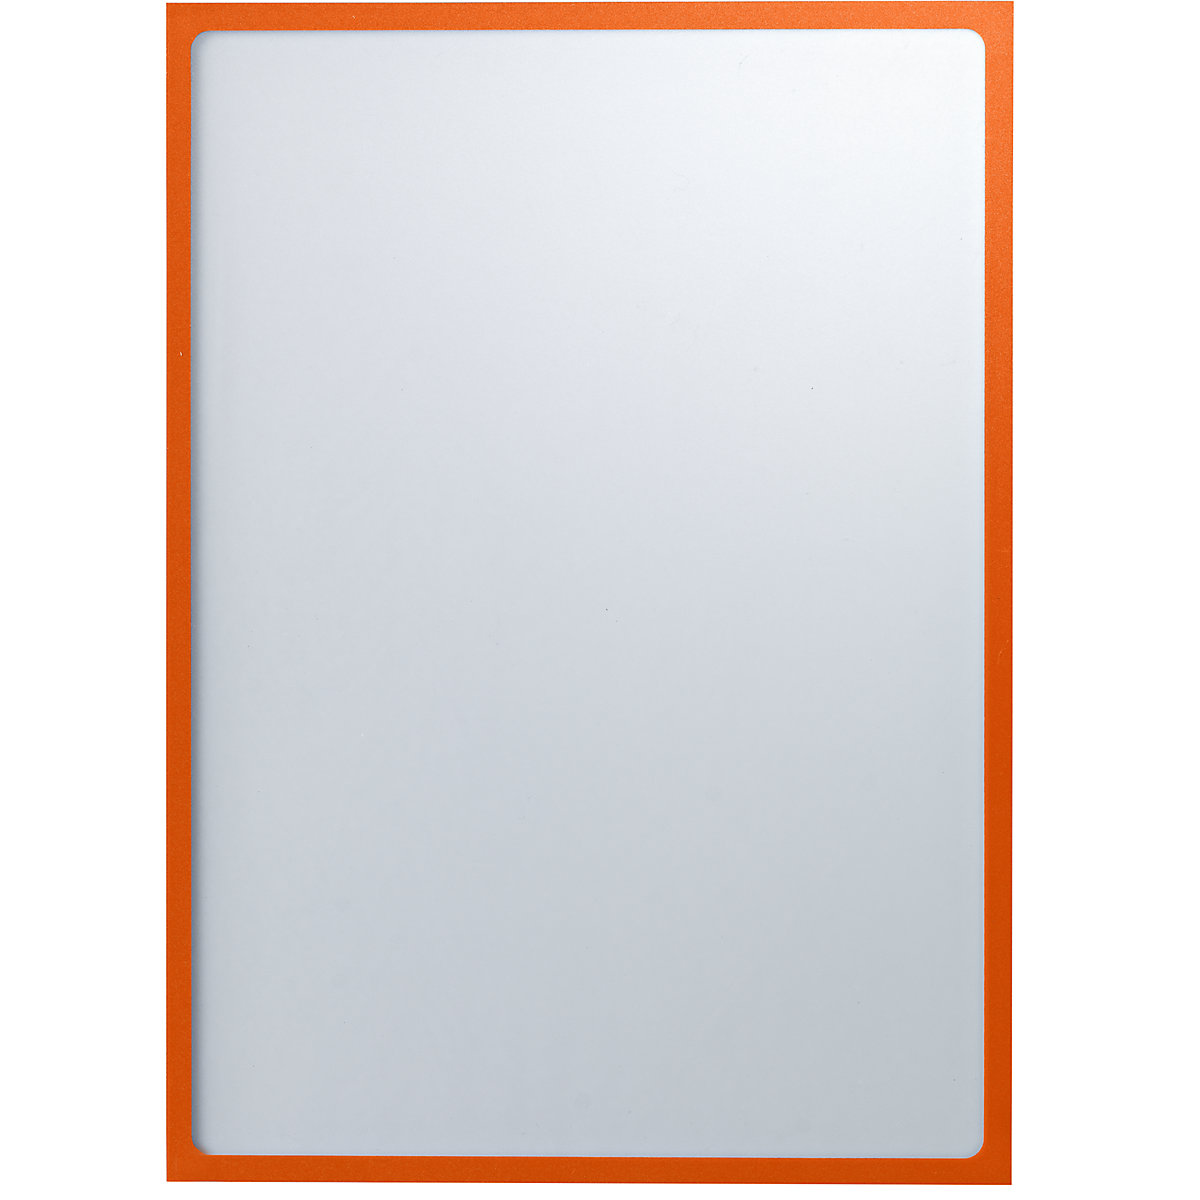 EUROKRAFTbasic – Pochette info magnétique, format A3, l x h 312 x 435 mm, cadre orange, lot de 10